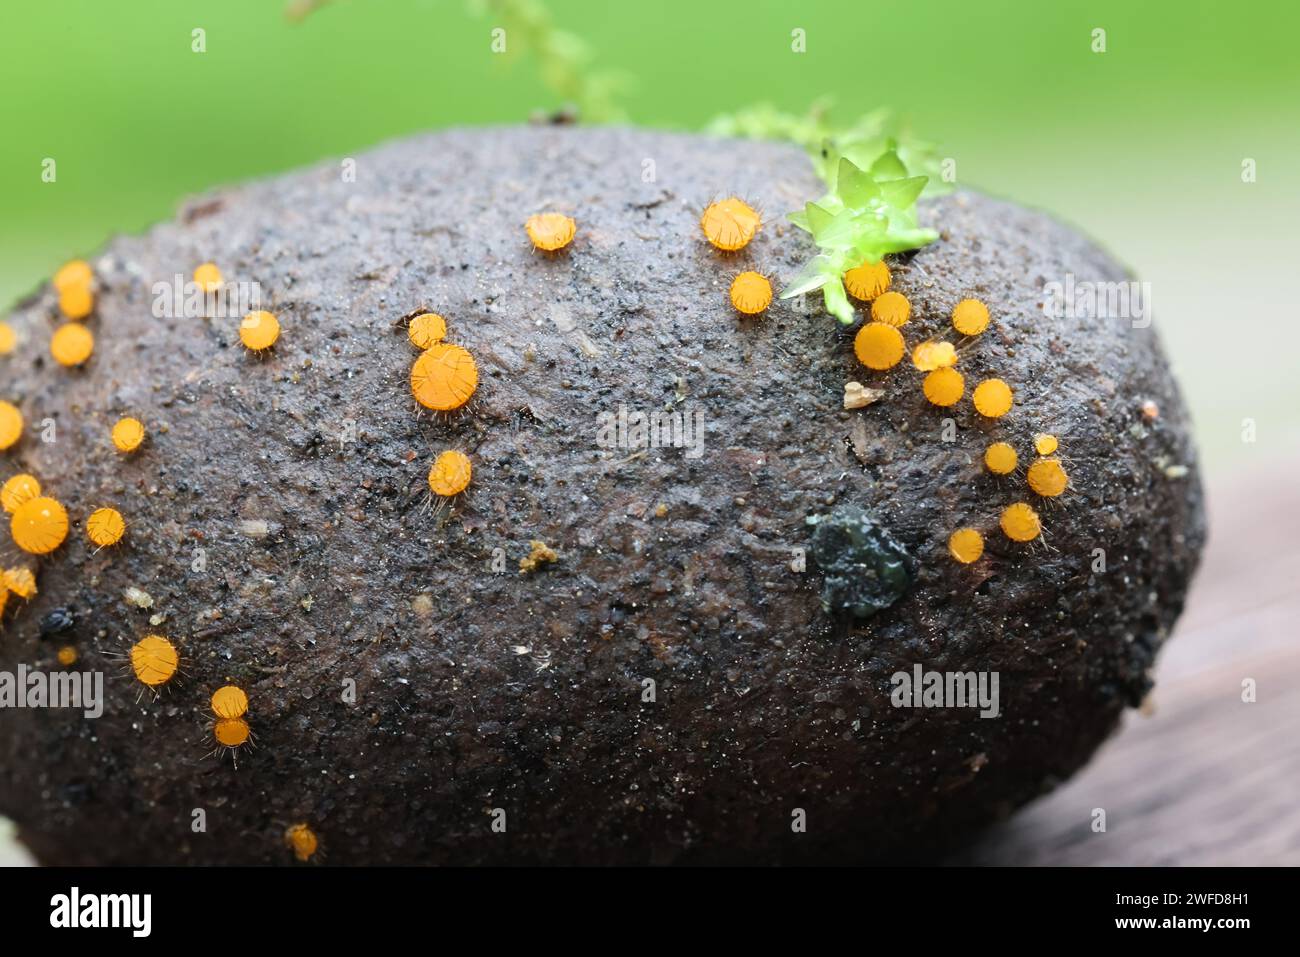 Cheilymenia parvispora, fungo coprifilo che cresce sullo sterco di alci in Finlandia, nessun nome inglese comune Foto Stock